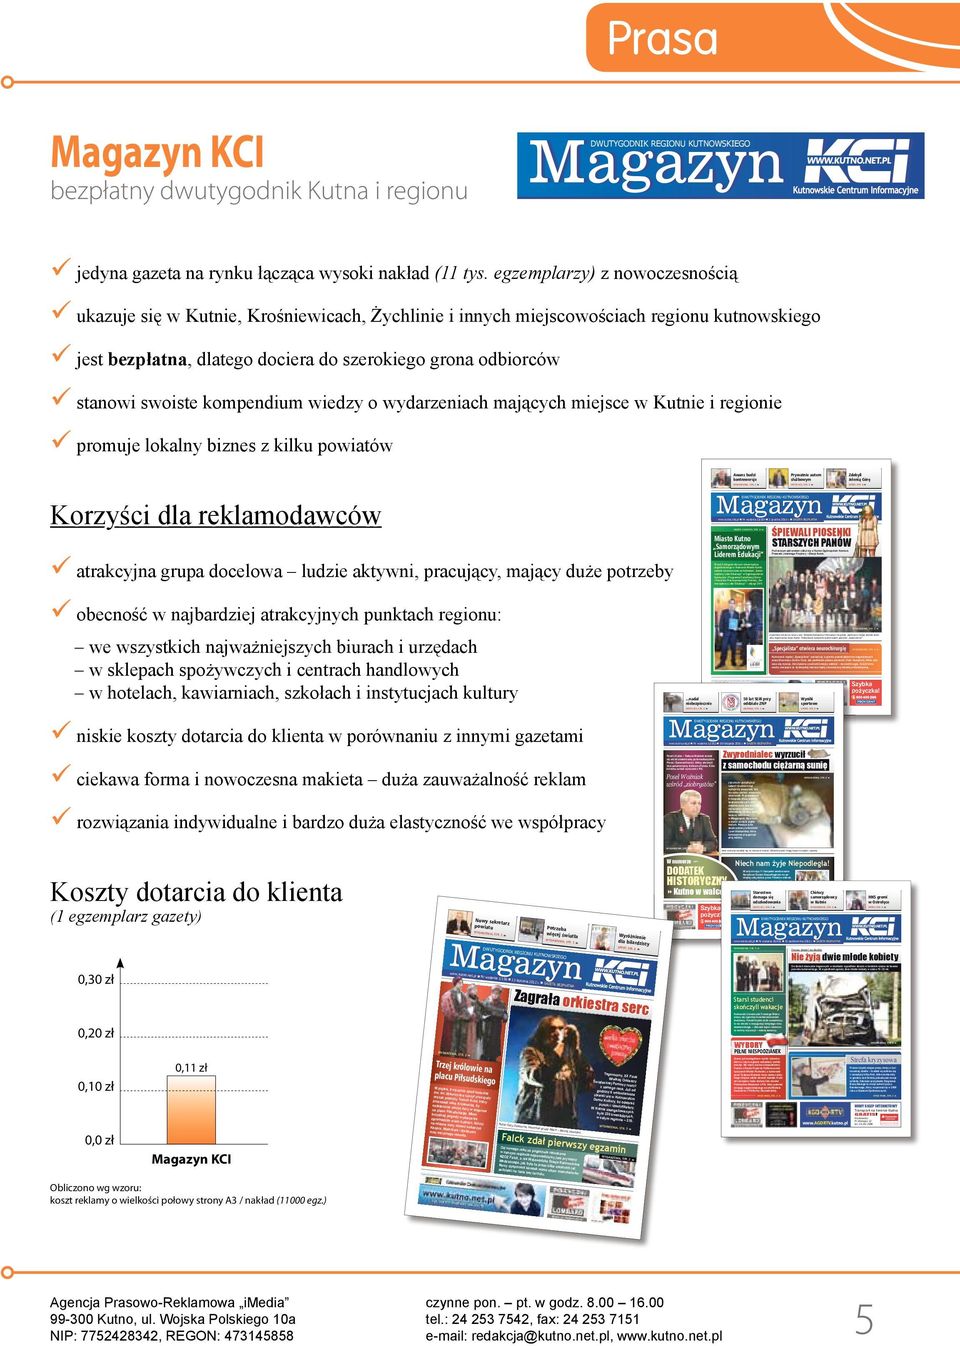 Certyfikacji Gmin i Powiatów Rzeczypospolitej Polskiej Samorządowy Lider Edukacji edycja 2011. 8 www.kutno.net.pl Nr wydania 22/153 18 listopada 2011 r.